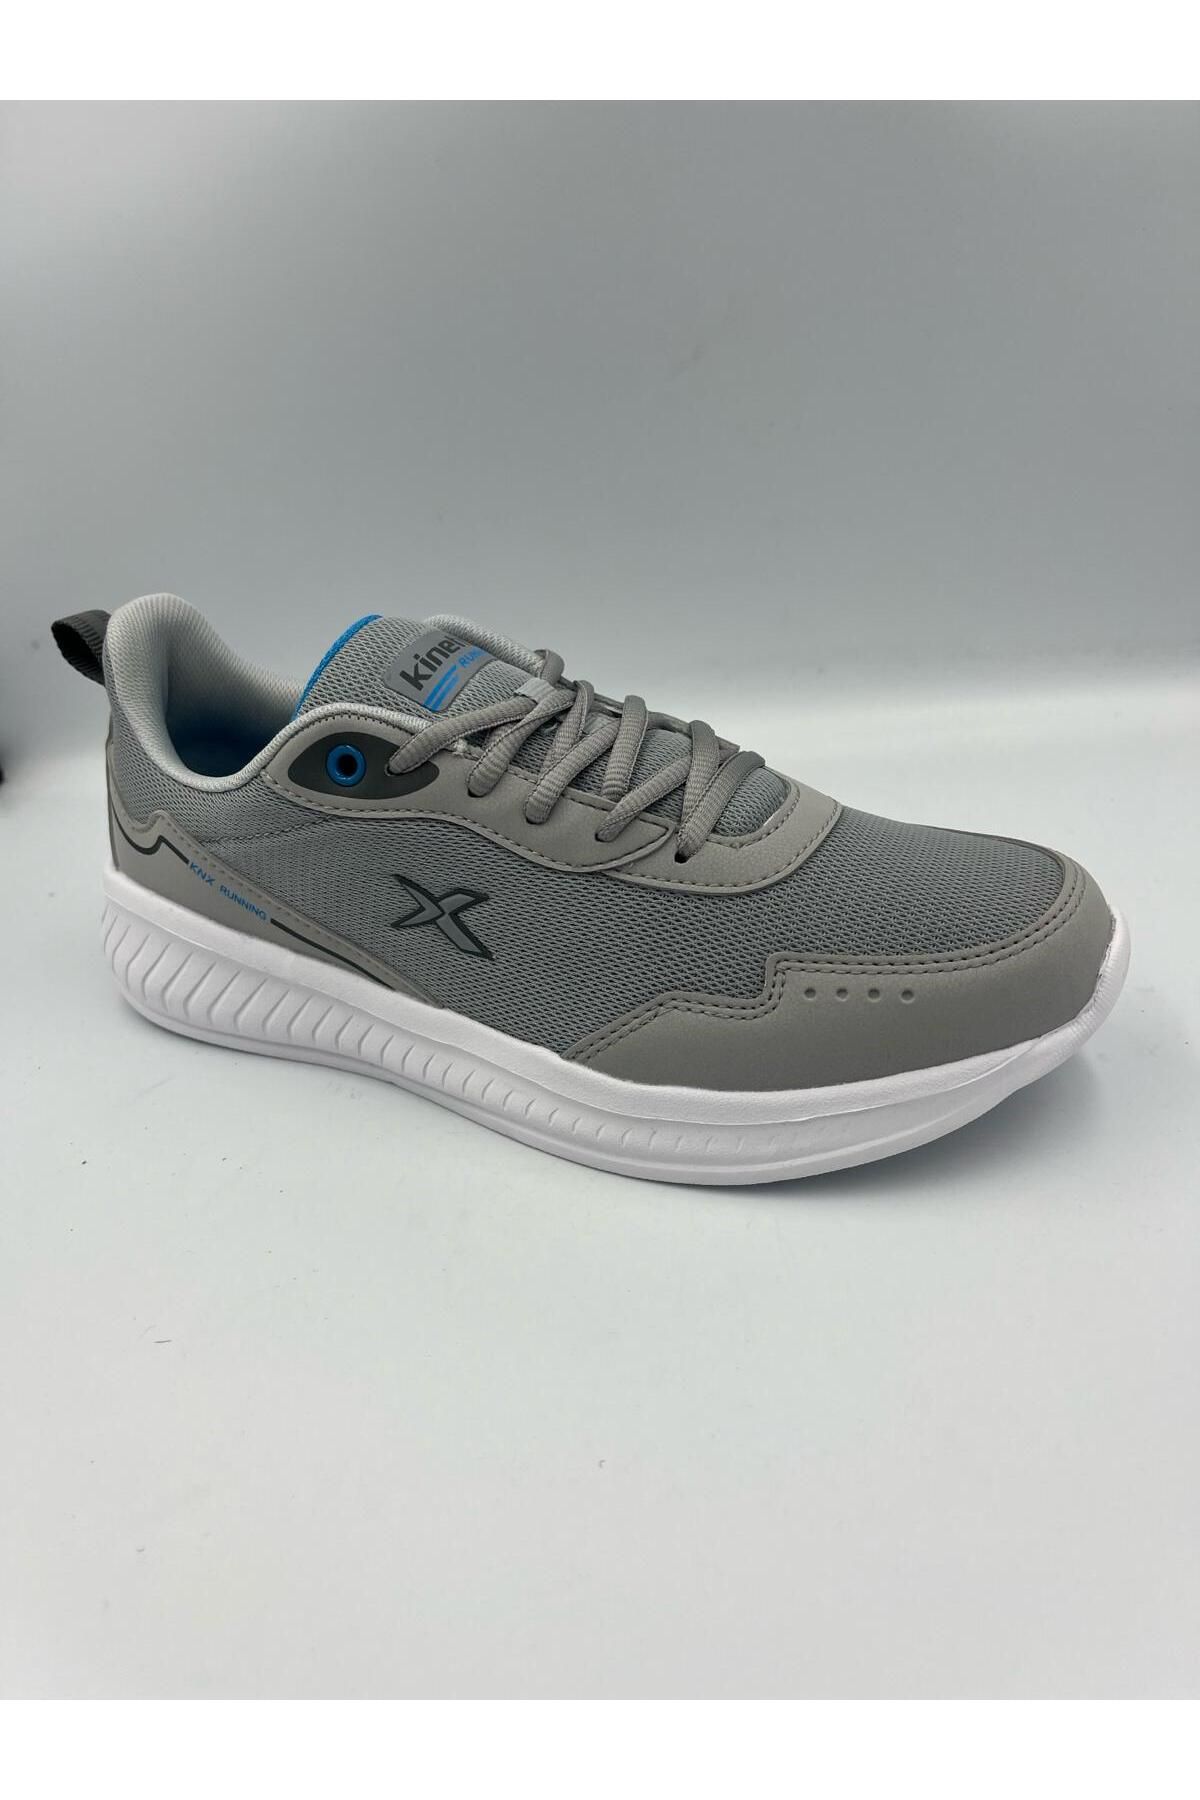 Kinetix erkek günlük rahat yürüyüş koşu spor ayakkabısı